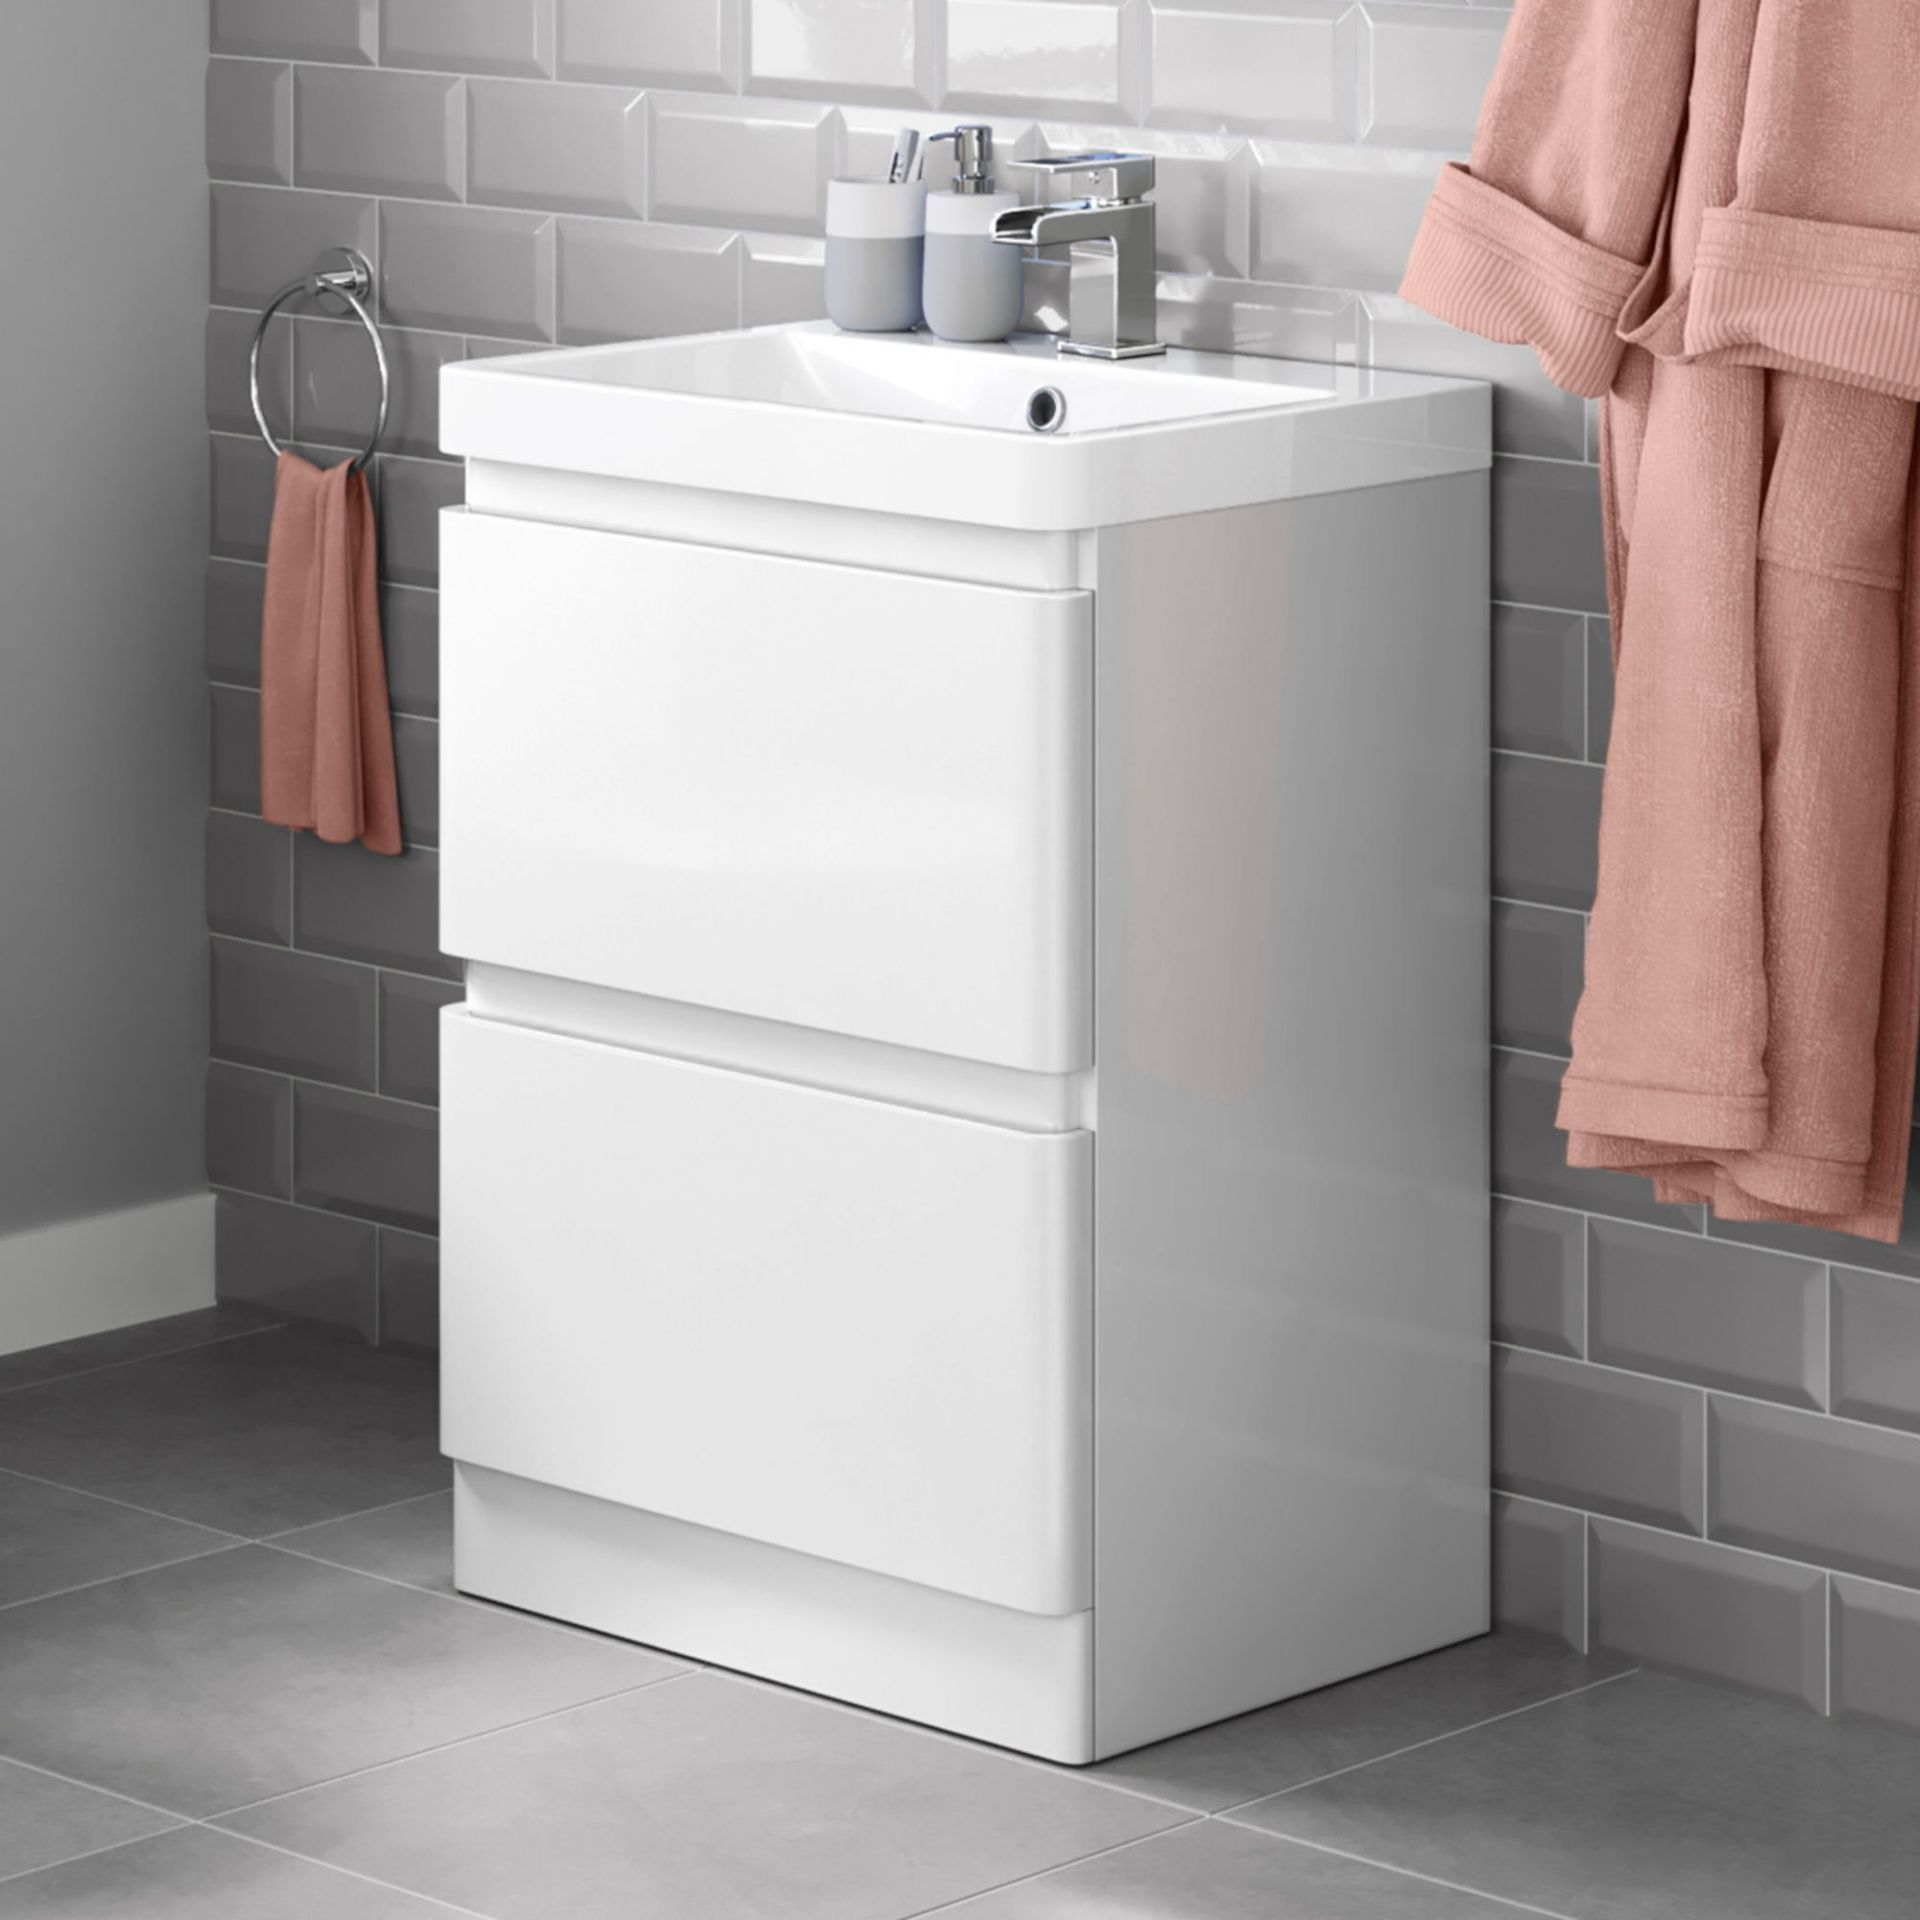 NEW & BOXED 600mm Denver Gloss White Built In Sink Drawer Unit - Floor Standing. RRP £849.99. ...